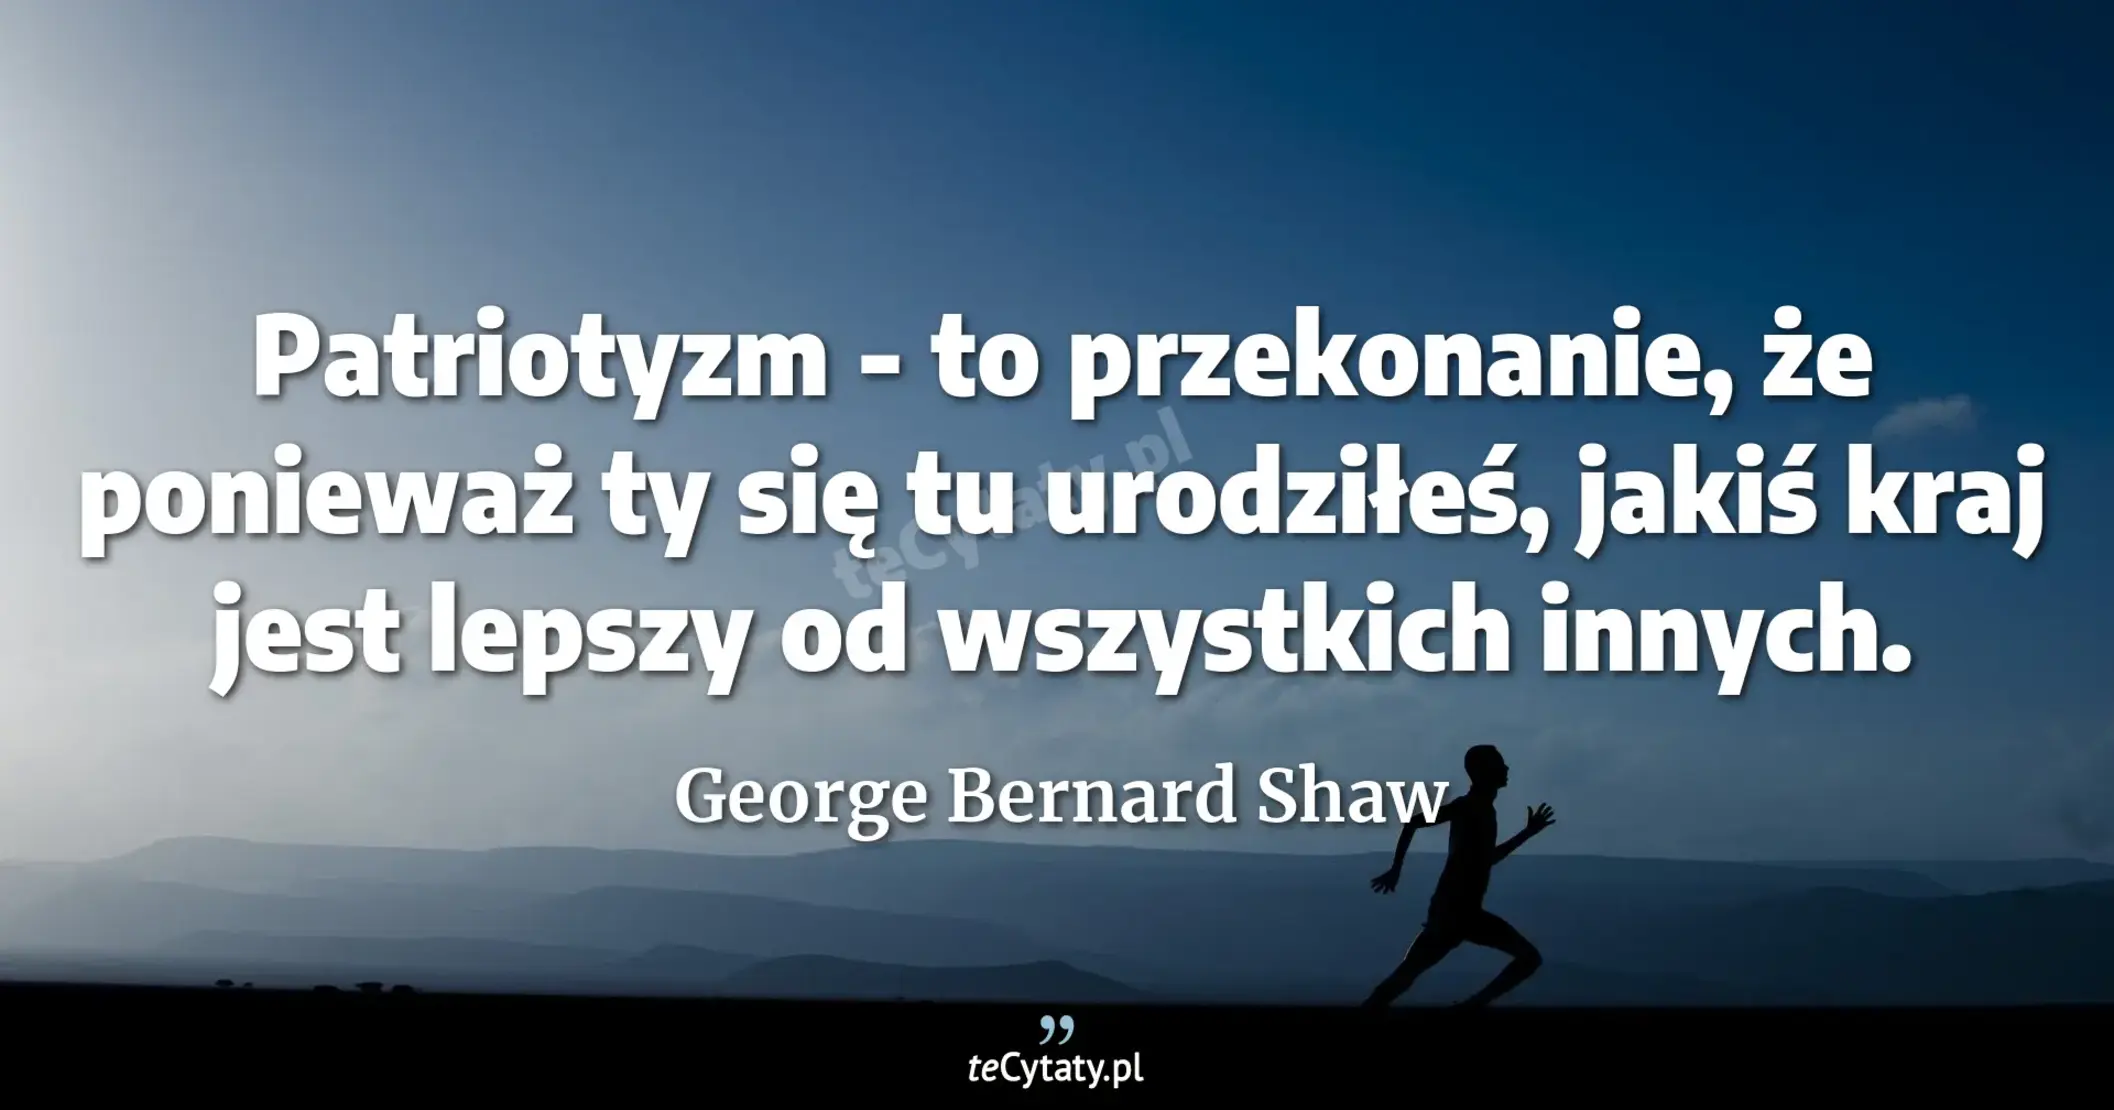 Patriotyzm - to przekonanie, że ponieważ ty się tu urodziłeś, jakiś kraj jest lepszy od wszystkich innych. - George Bernard Shaw